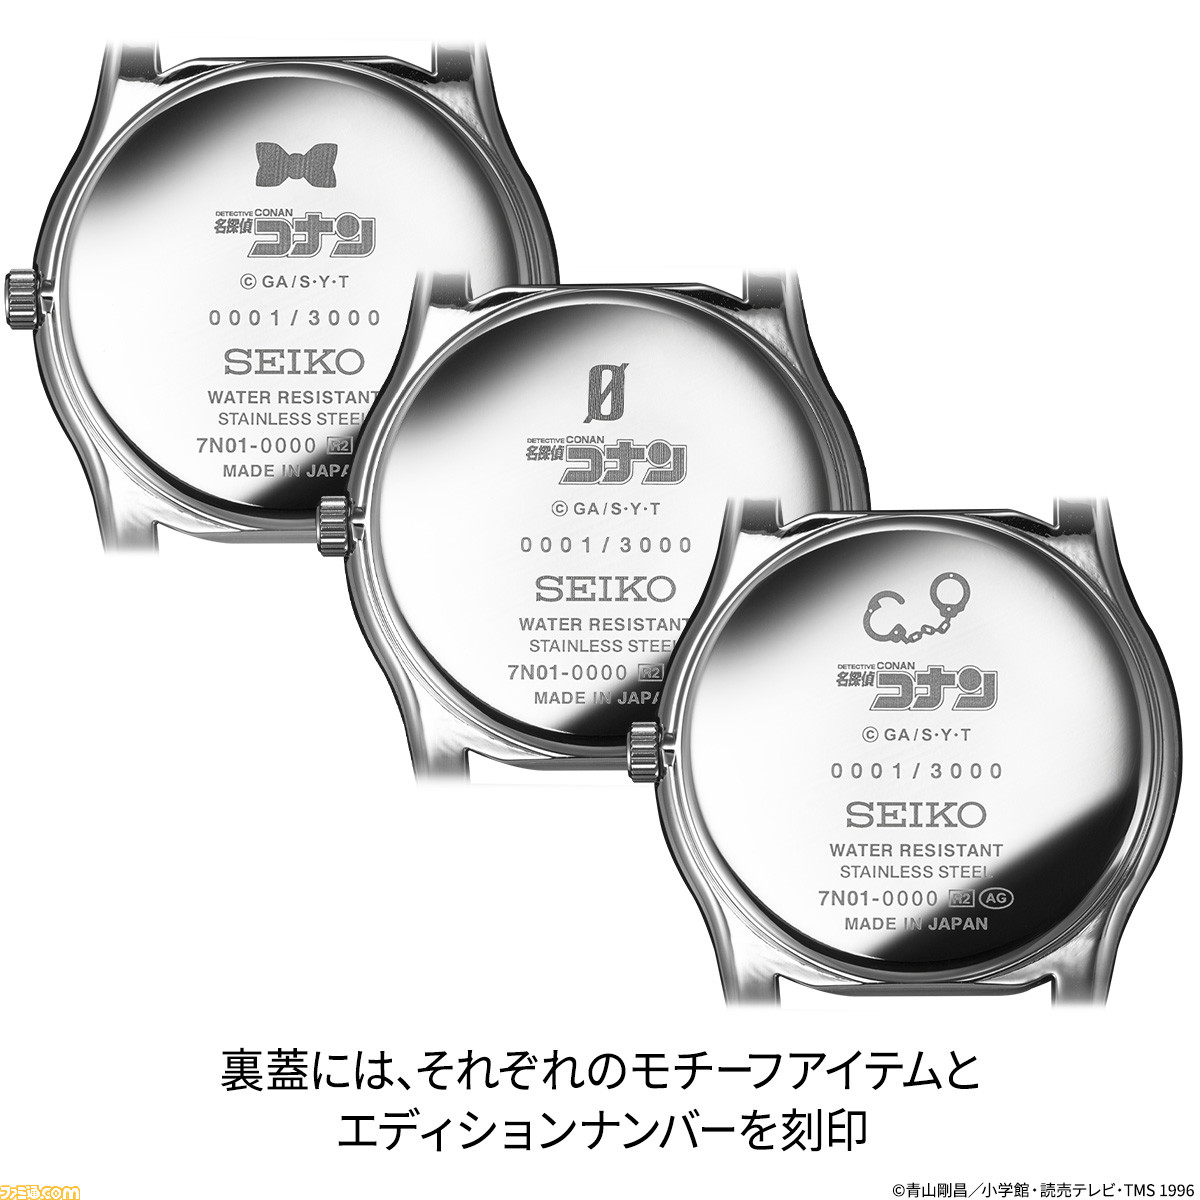 名探偵コナン』×セイコーのコラボ腕時計が数量限定で発売